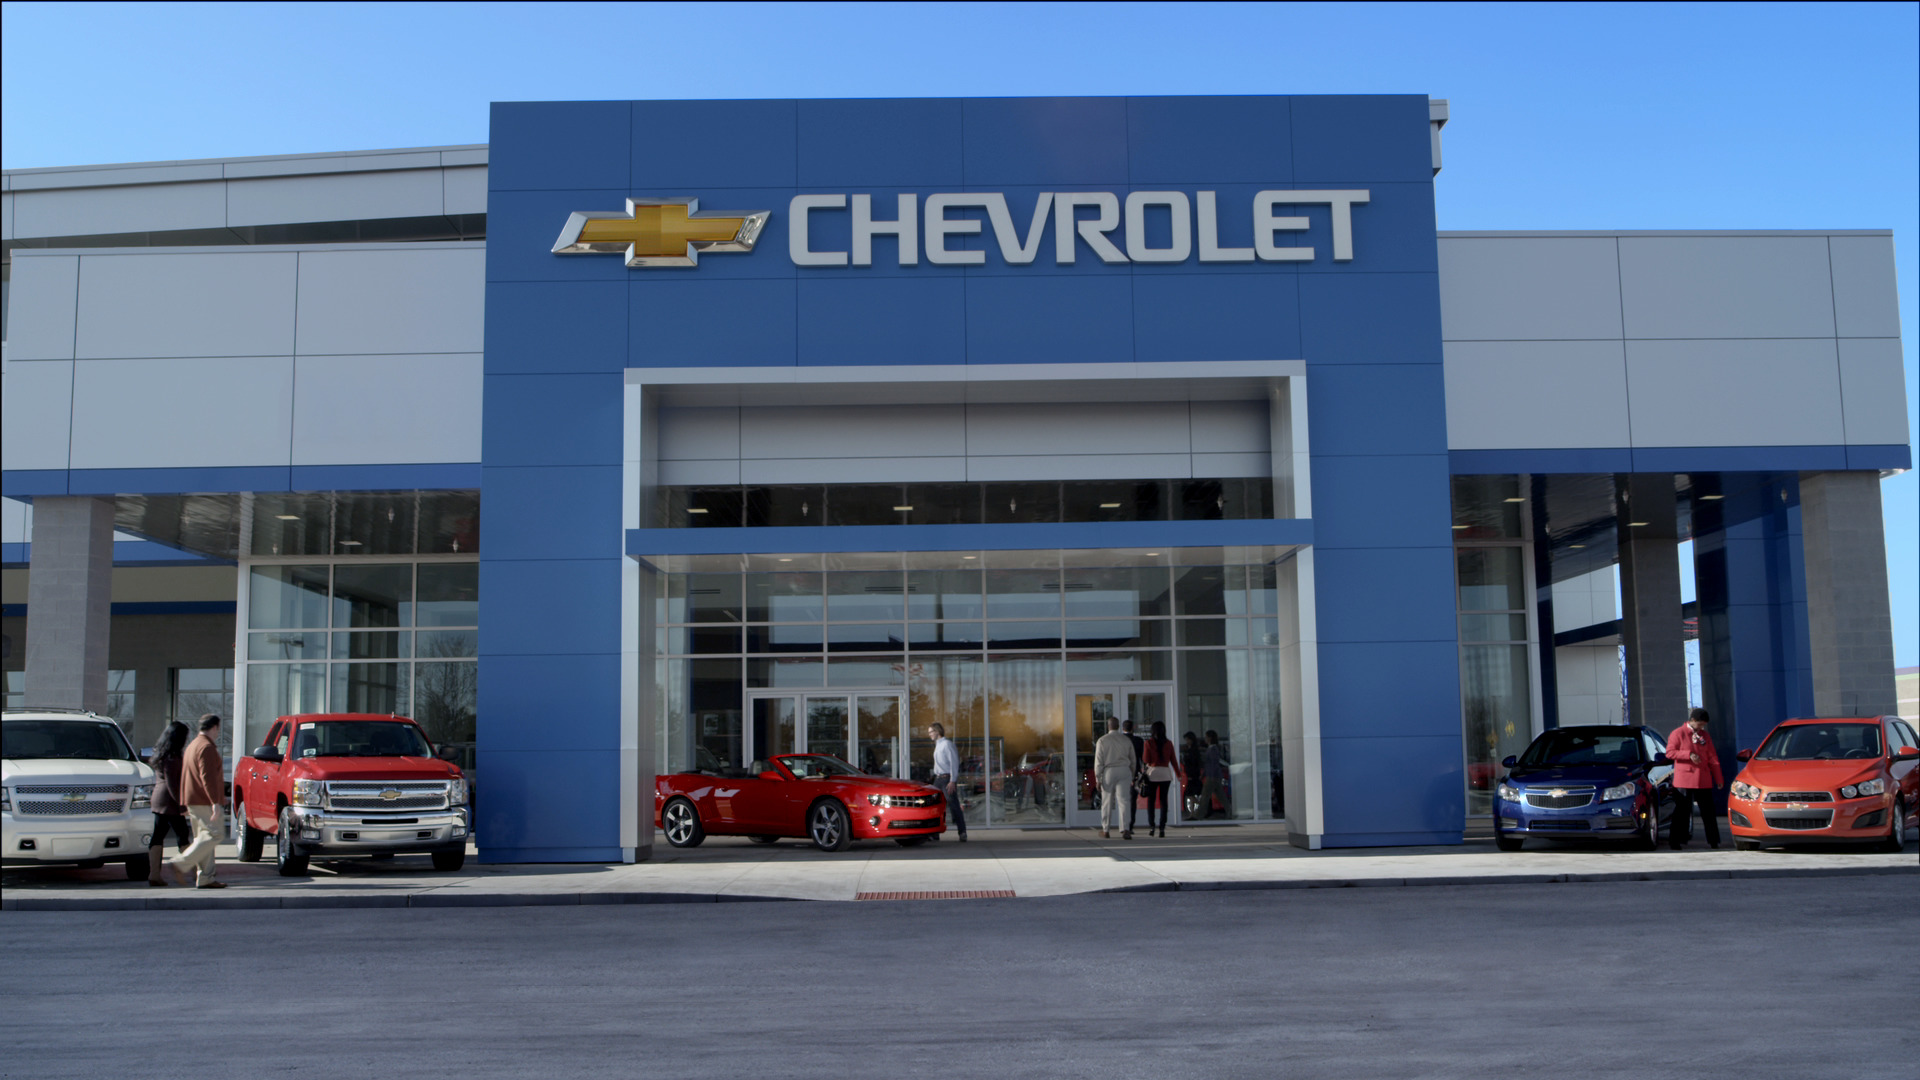 Chevrolet Marketing